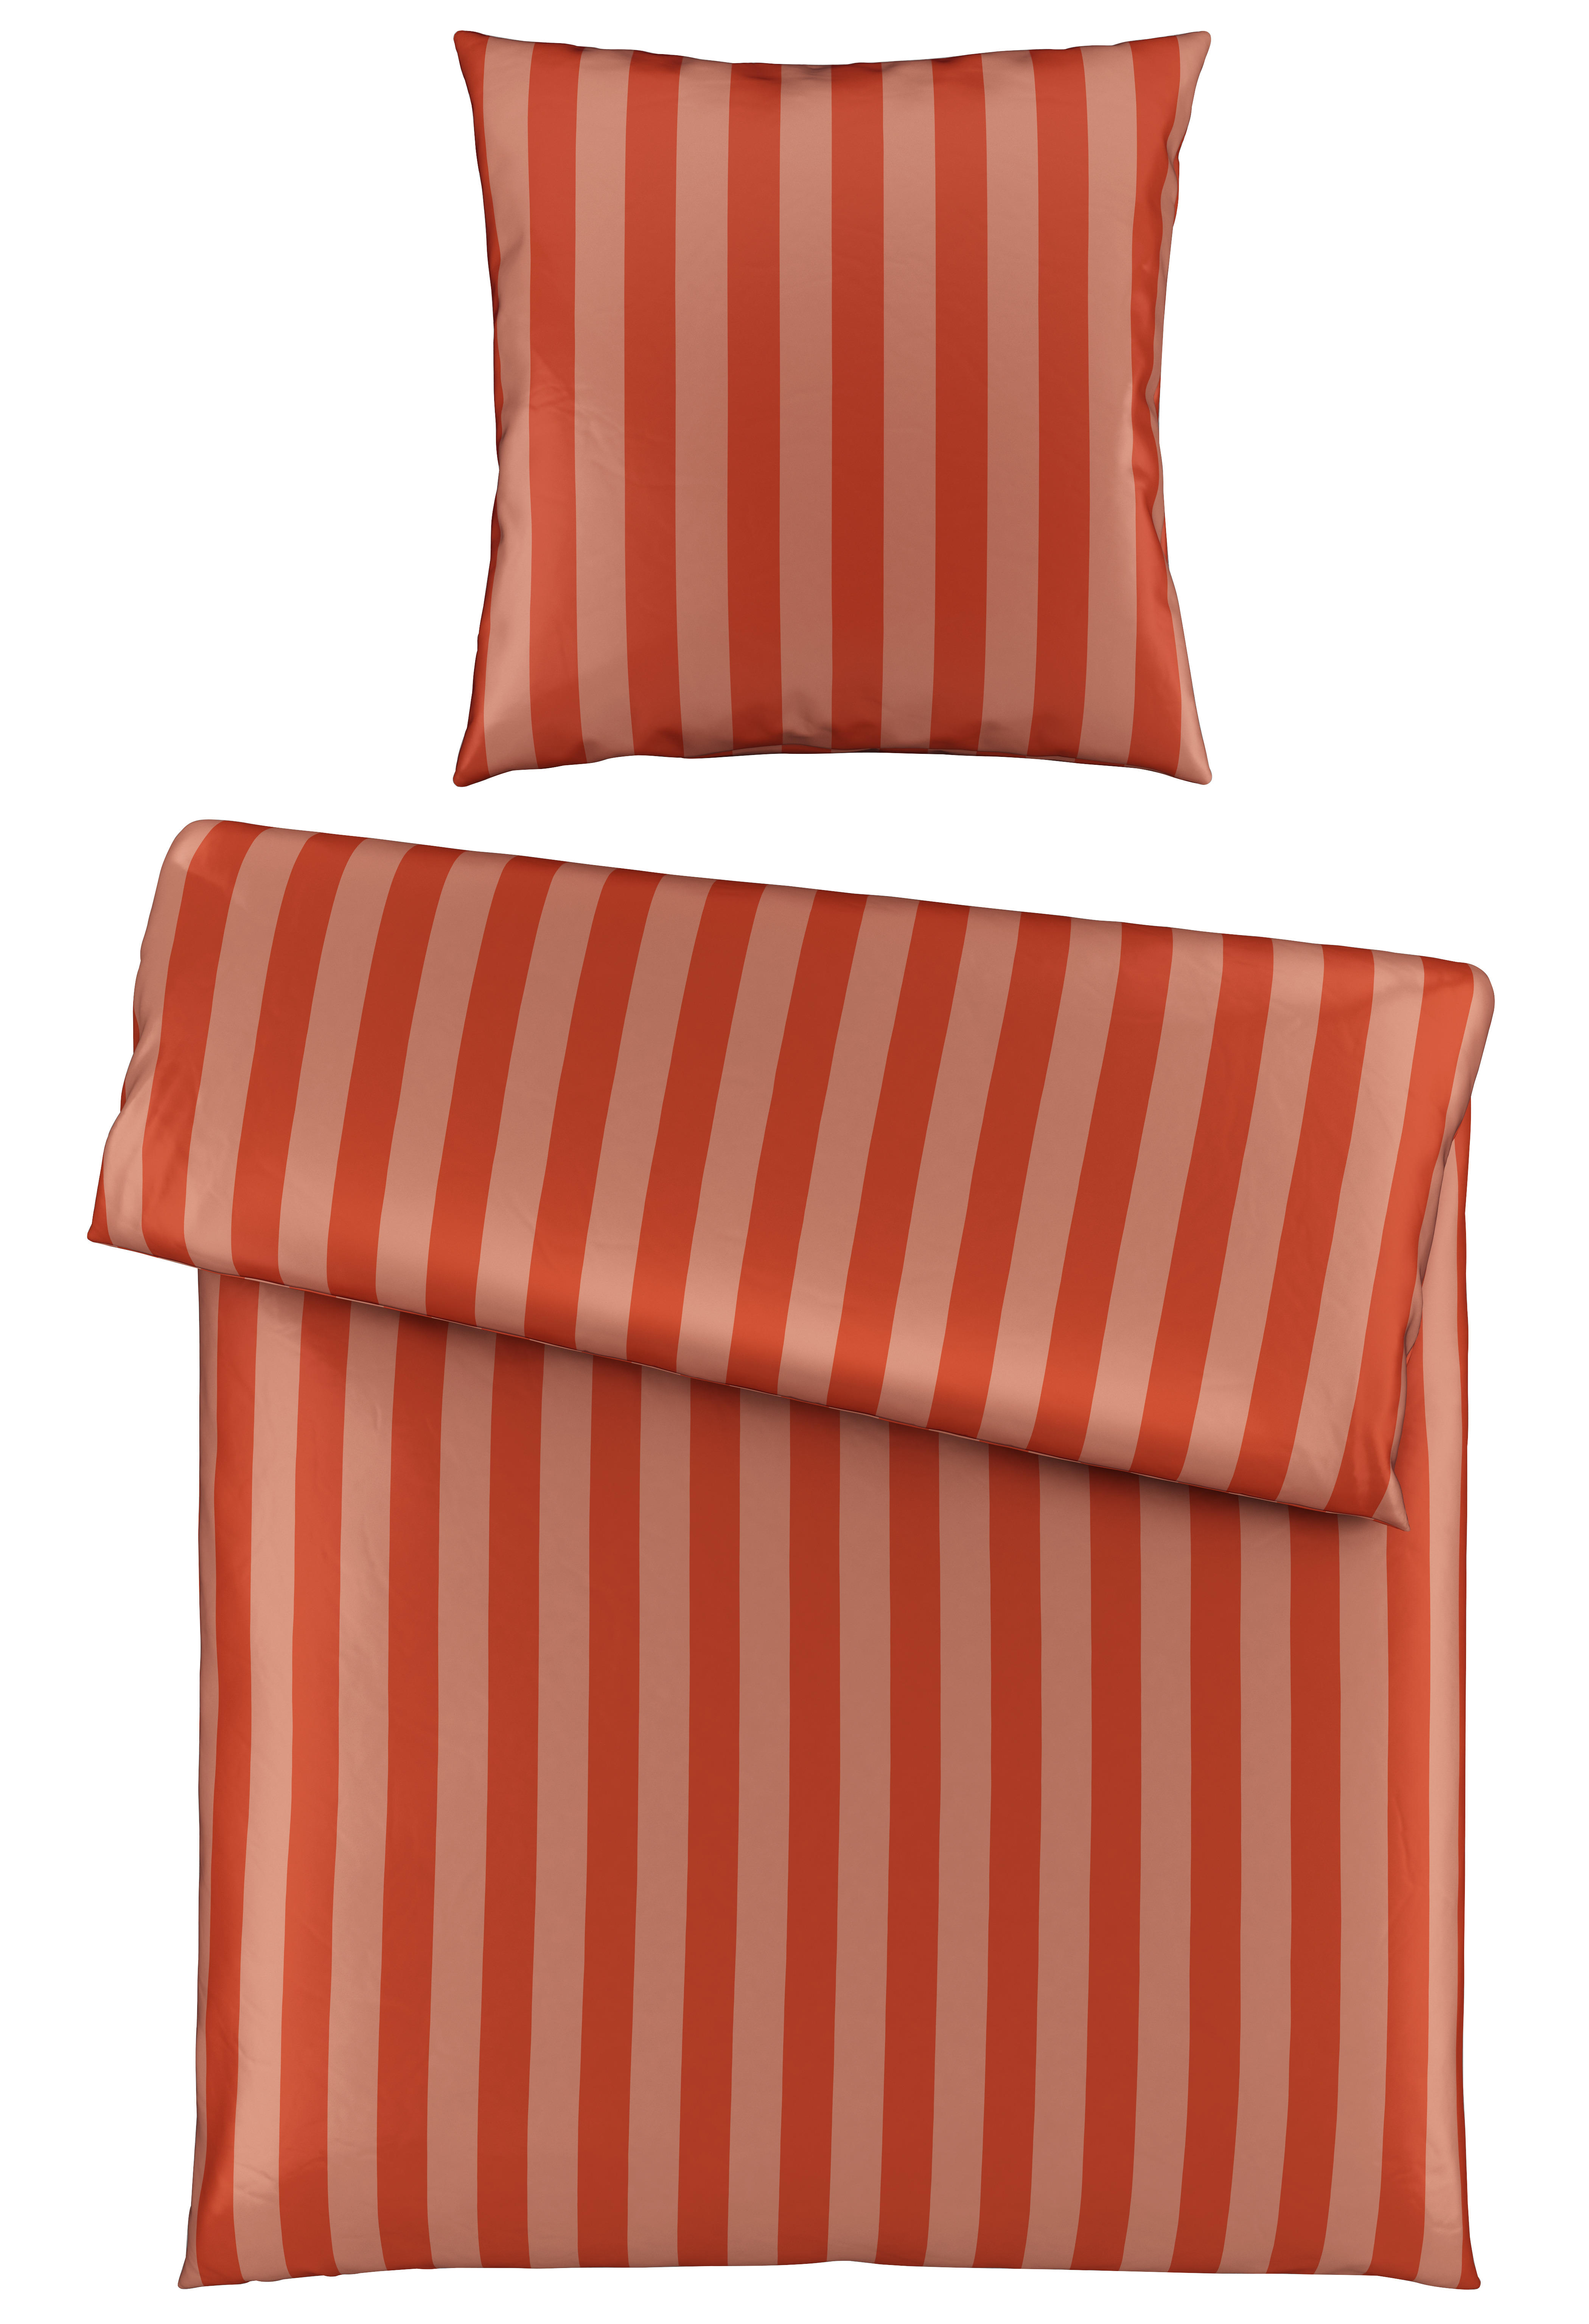 BETTWÄSCHE Dobby Satin  - Braun/Orange, KONVENTIONELL, Textil (135/200cm) - Ambiente